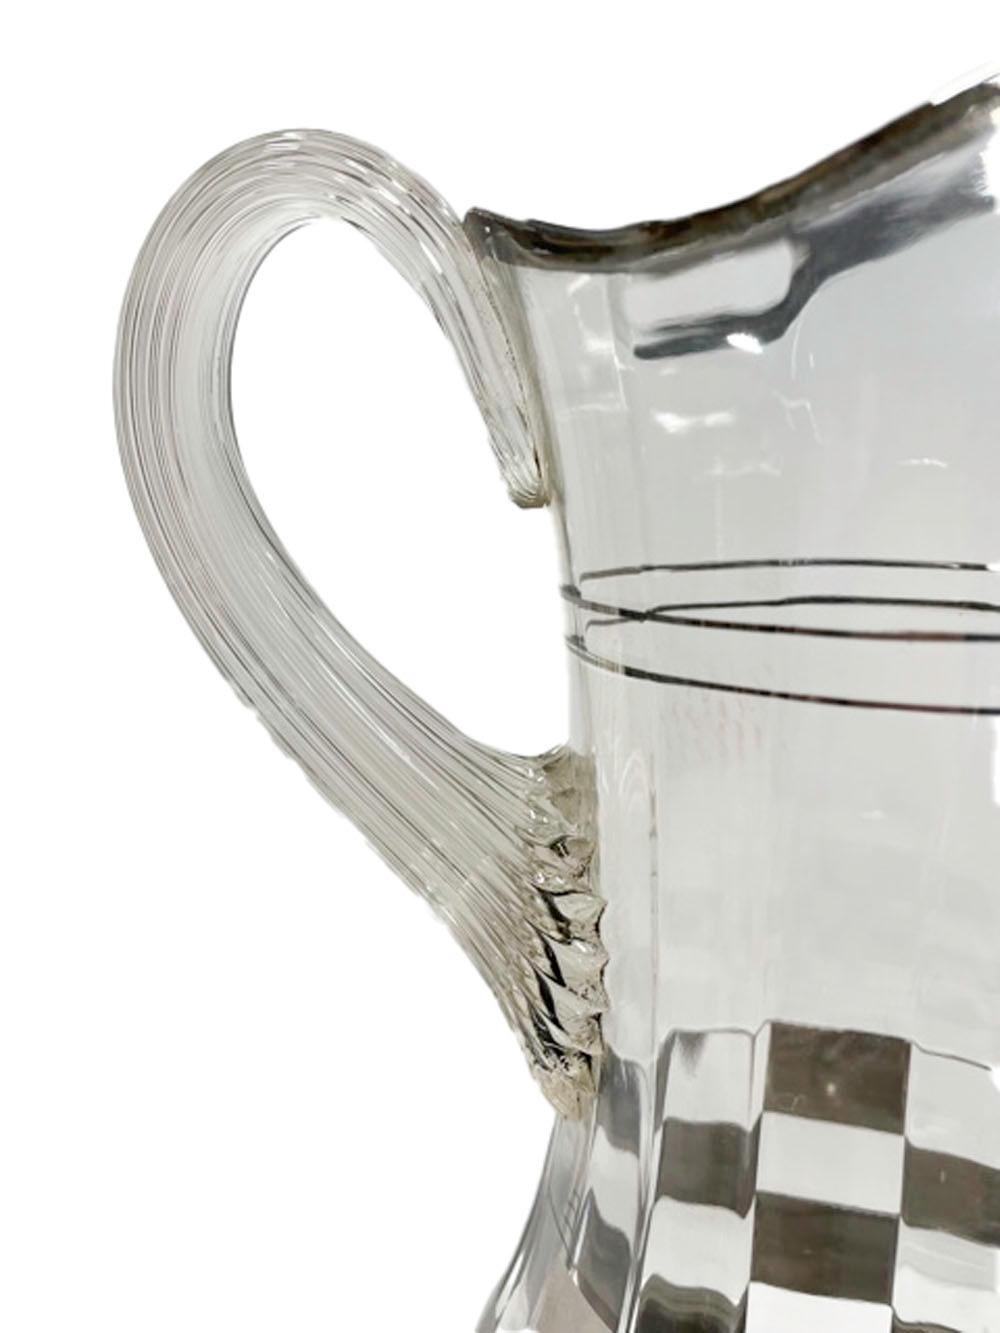 Cocktail-Set im Art-déco-Stil mit Silberkaro-Muster auf geripptem optischem Glas (amerikanisch)